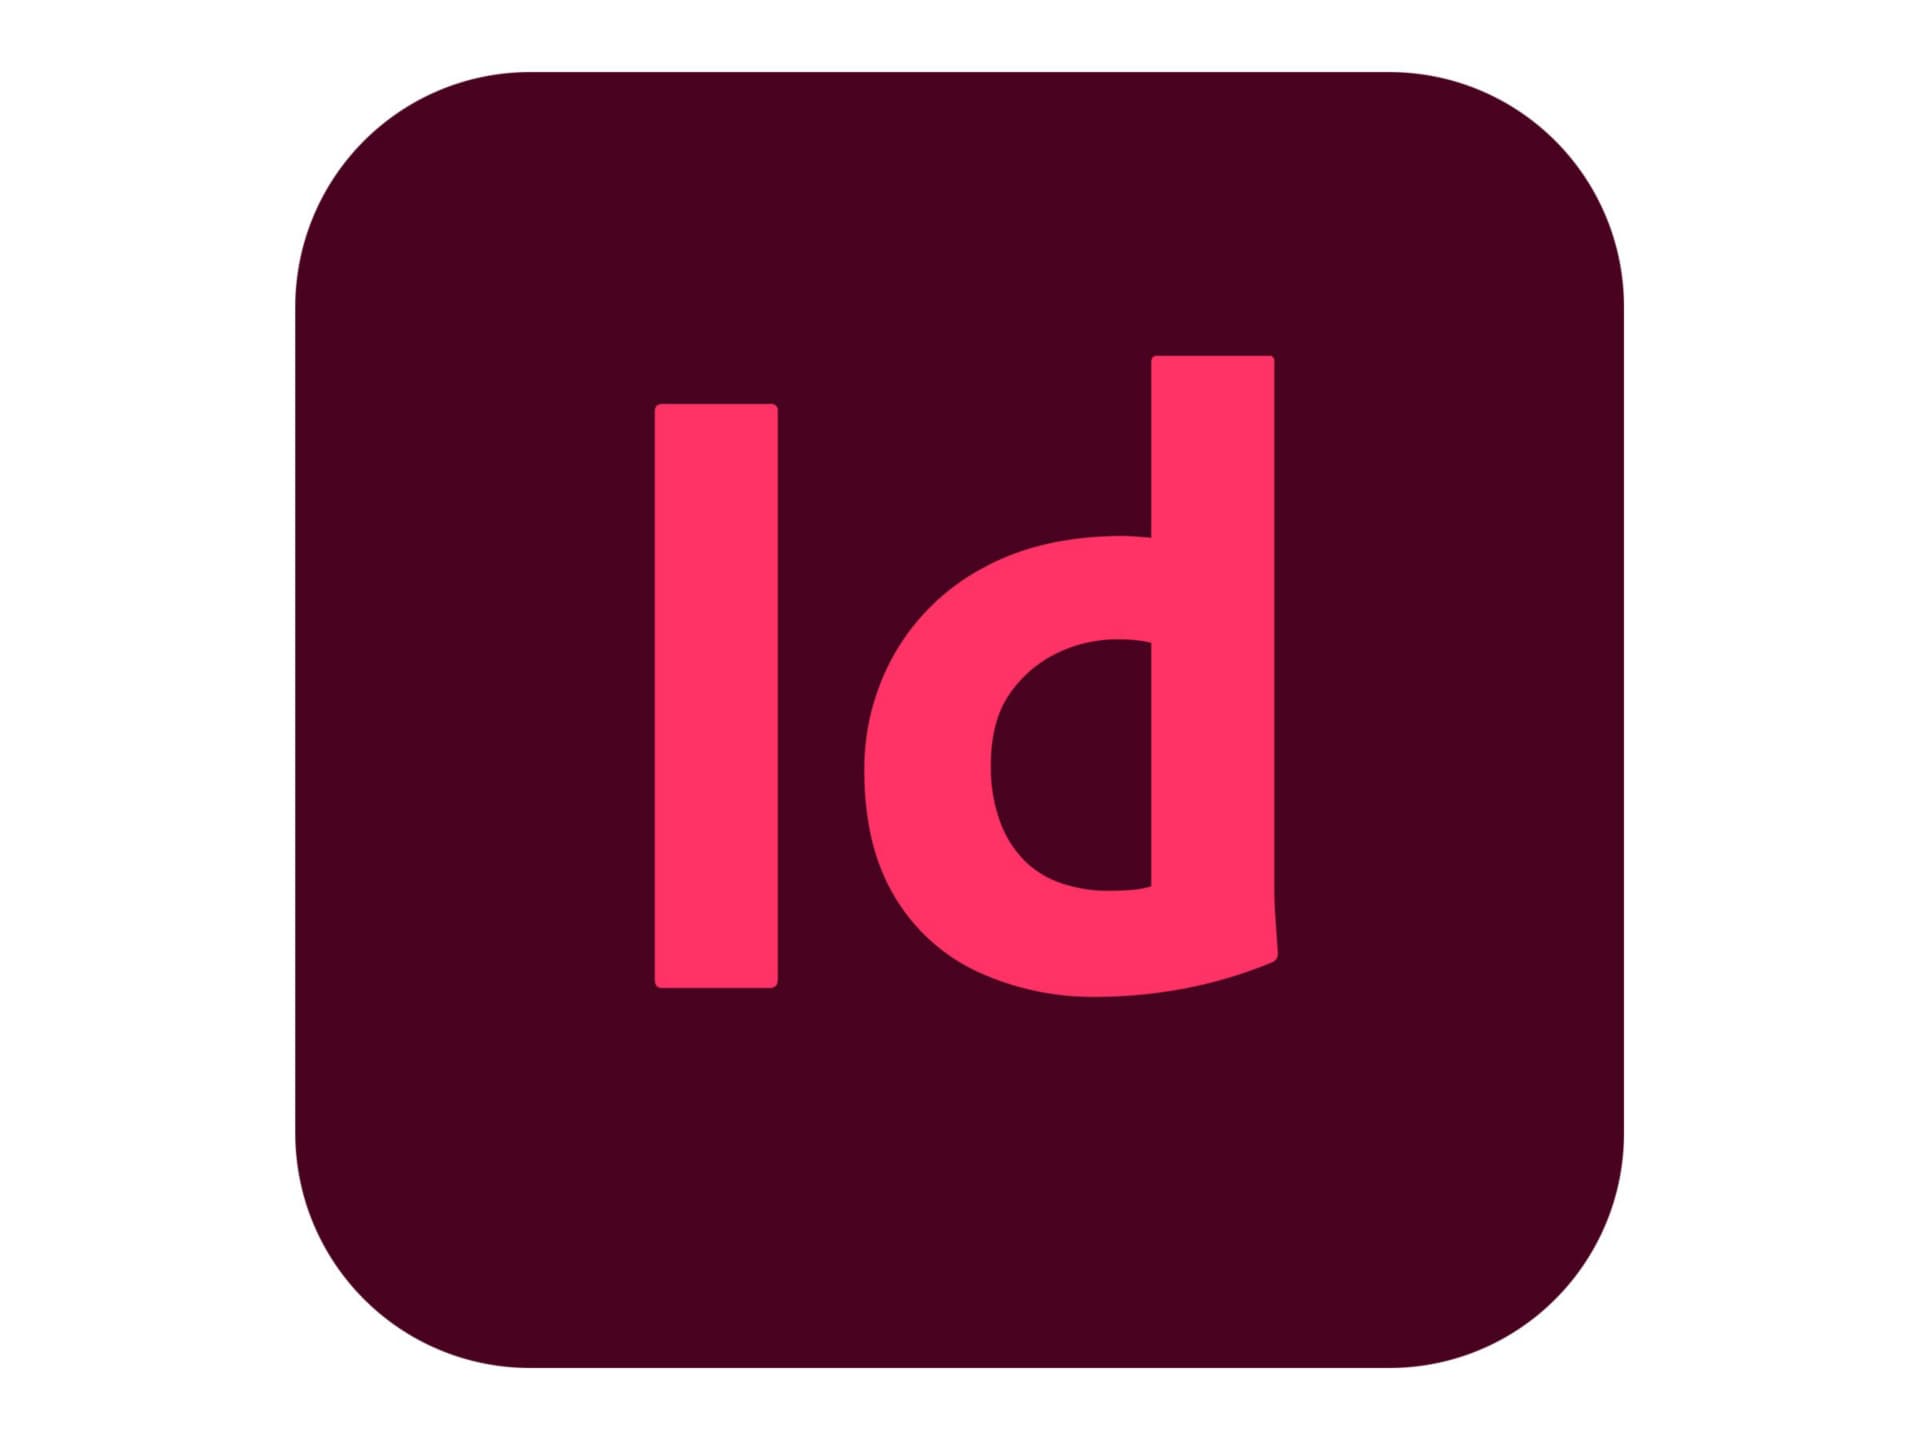 Adobe InDesign CC for Enterprise - Subscription New (10 months) - 1 named u